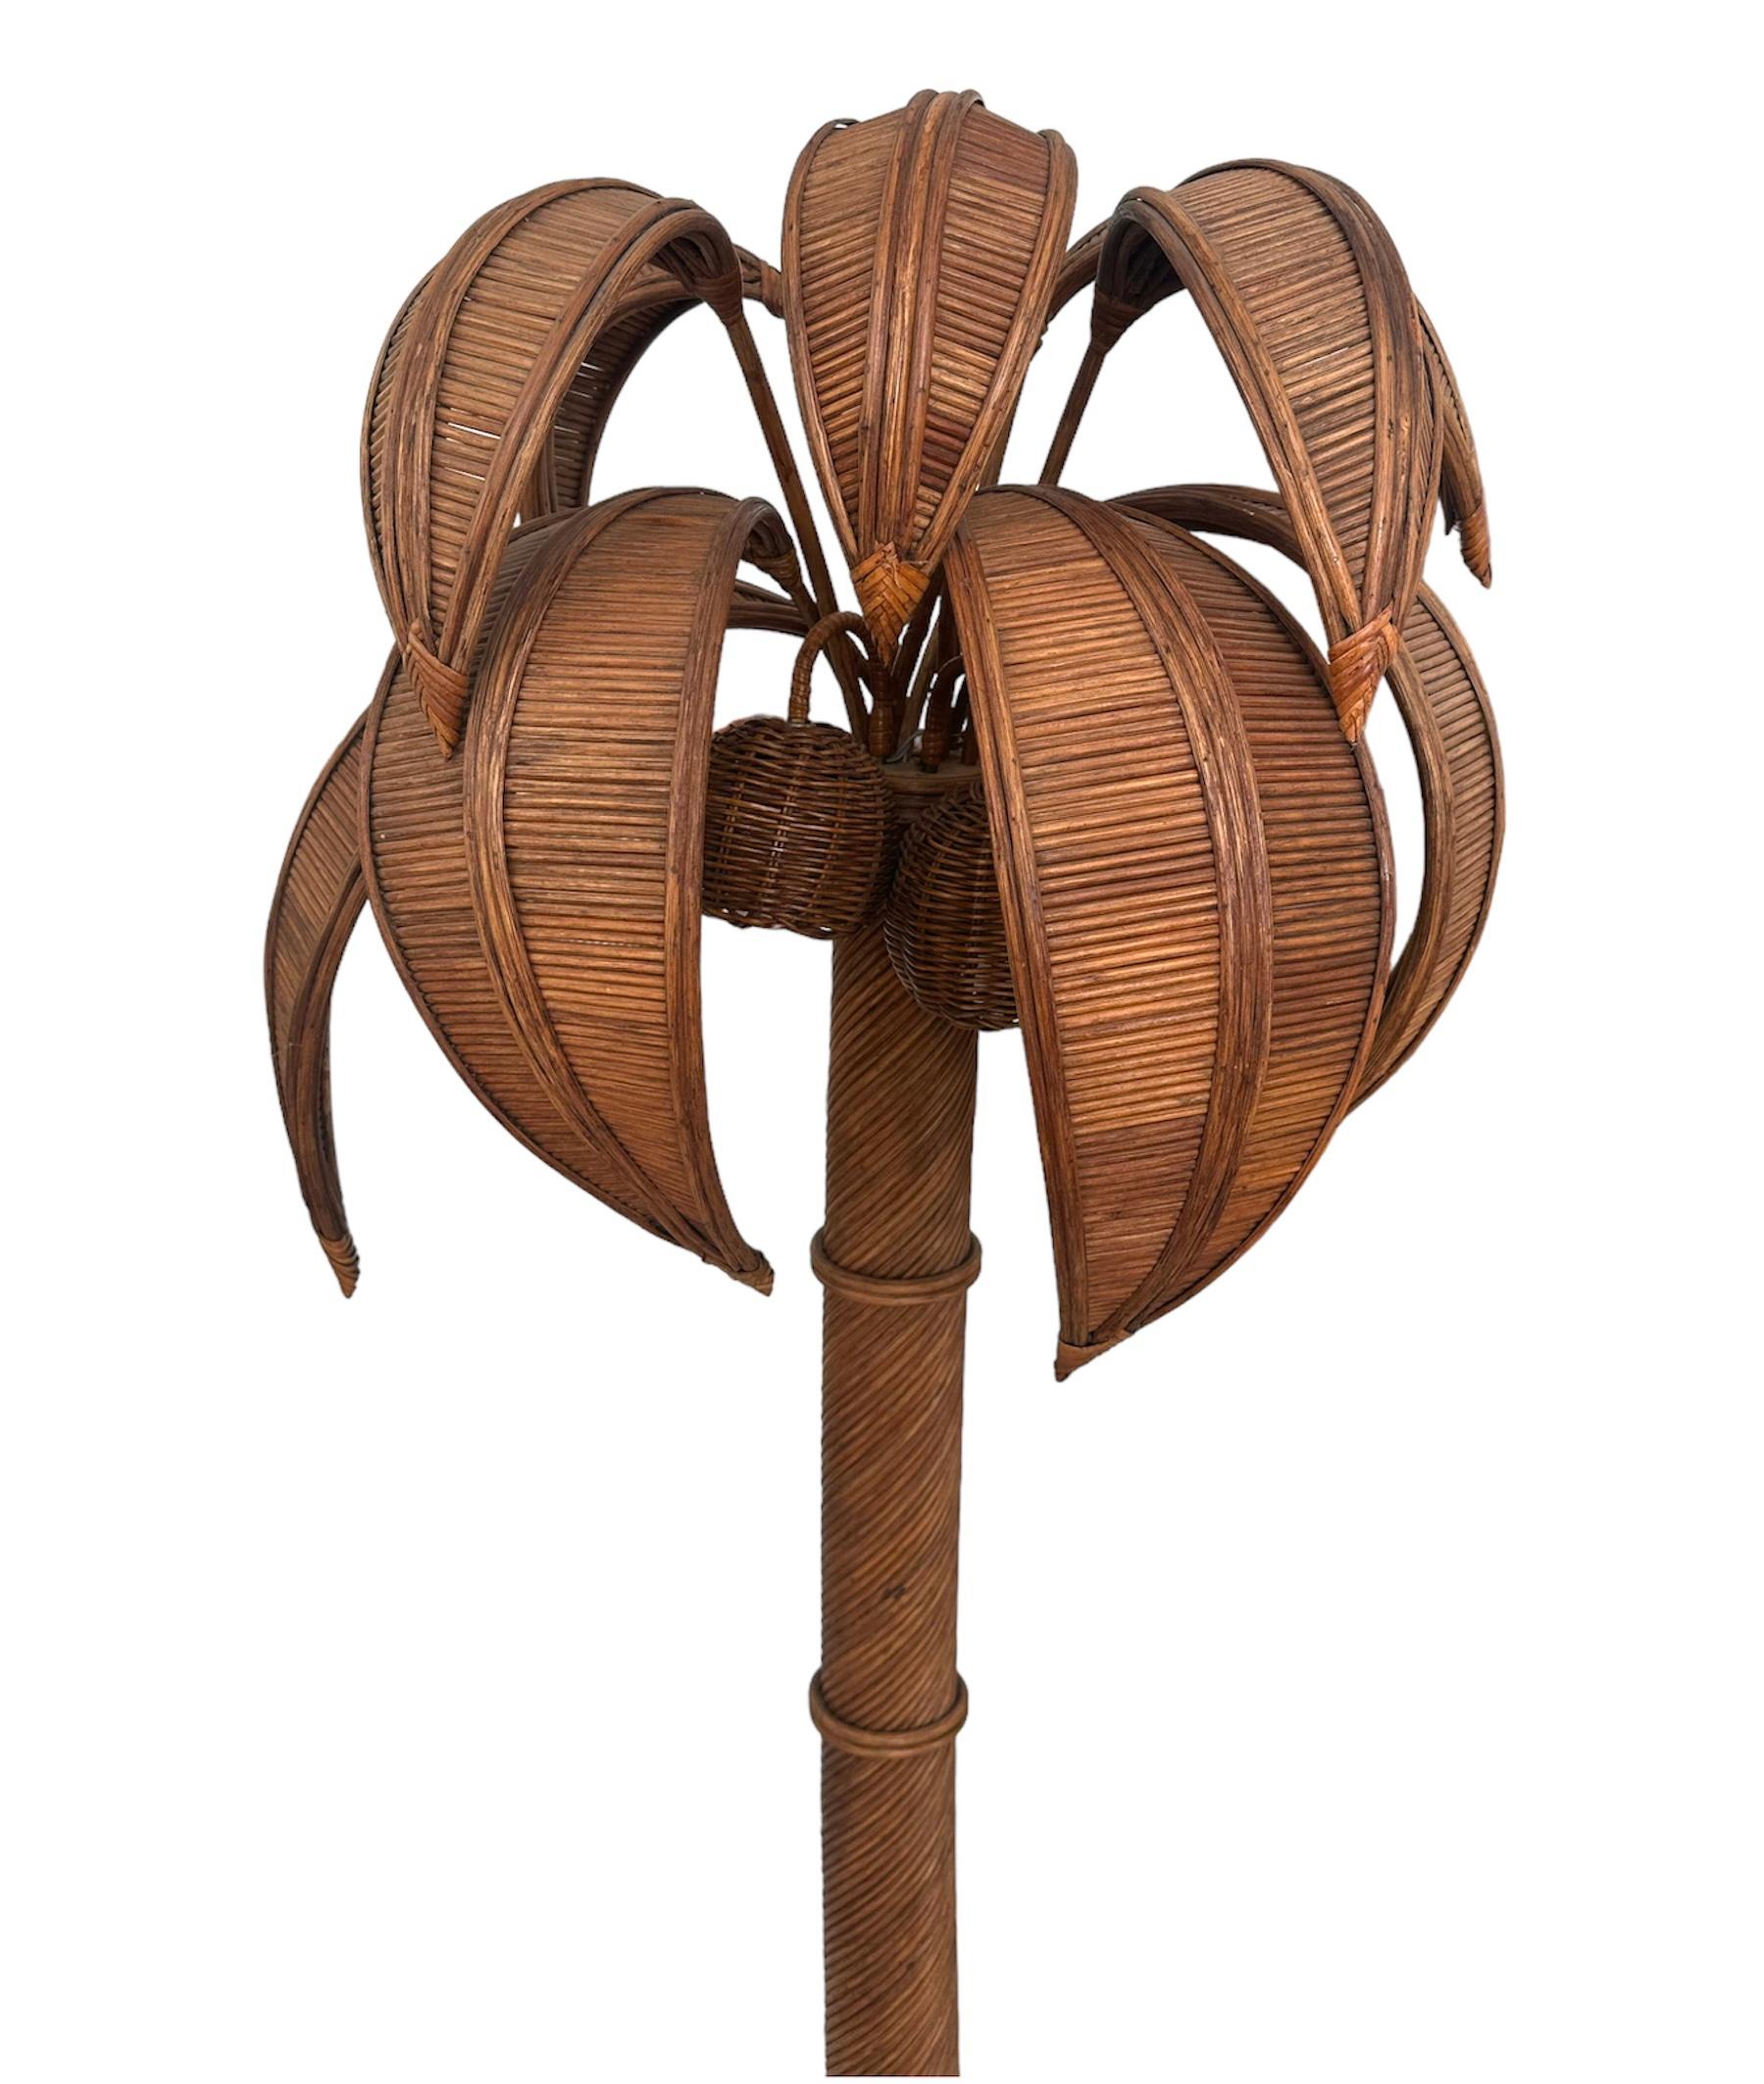 Stehlampe aus Palmenholz von Mario Lopez Torres, 1970

Beeindruckende Stehleuchte des mexikanischen Künstlers Mario Lopez Torres, der in den 1970er Jahren für seine skulpturalen Weidenkreationen bekannt wurde, die von ausgewählten Galerien in